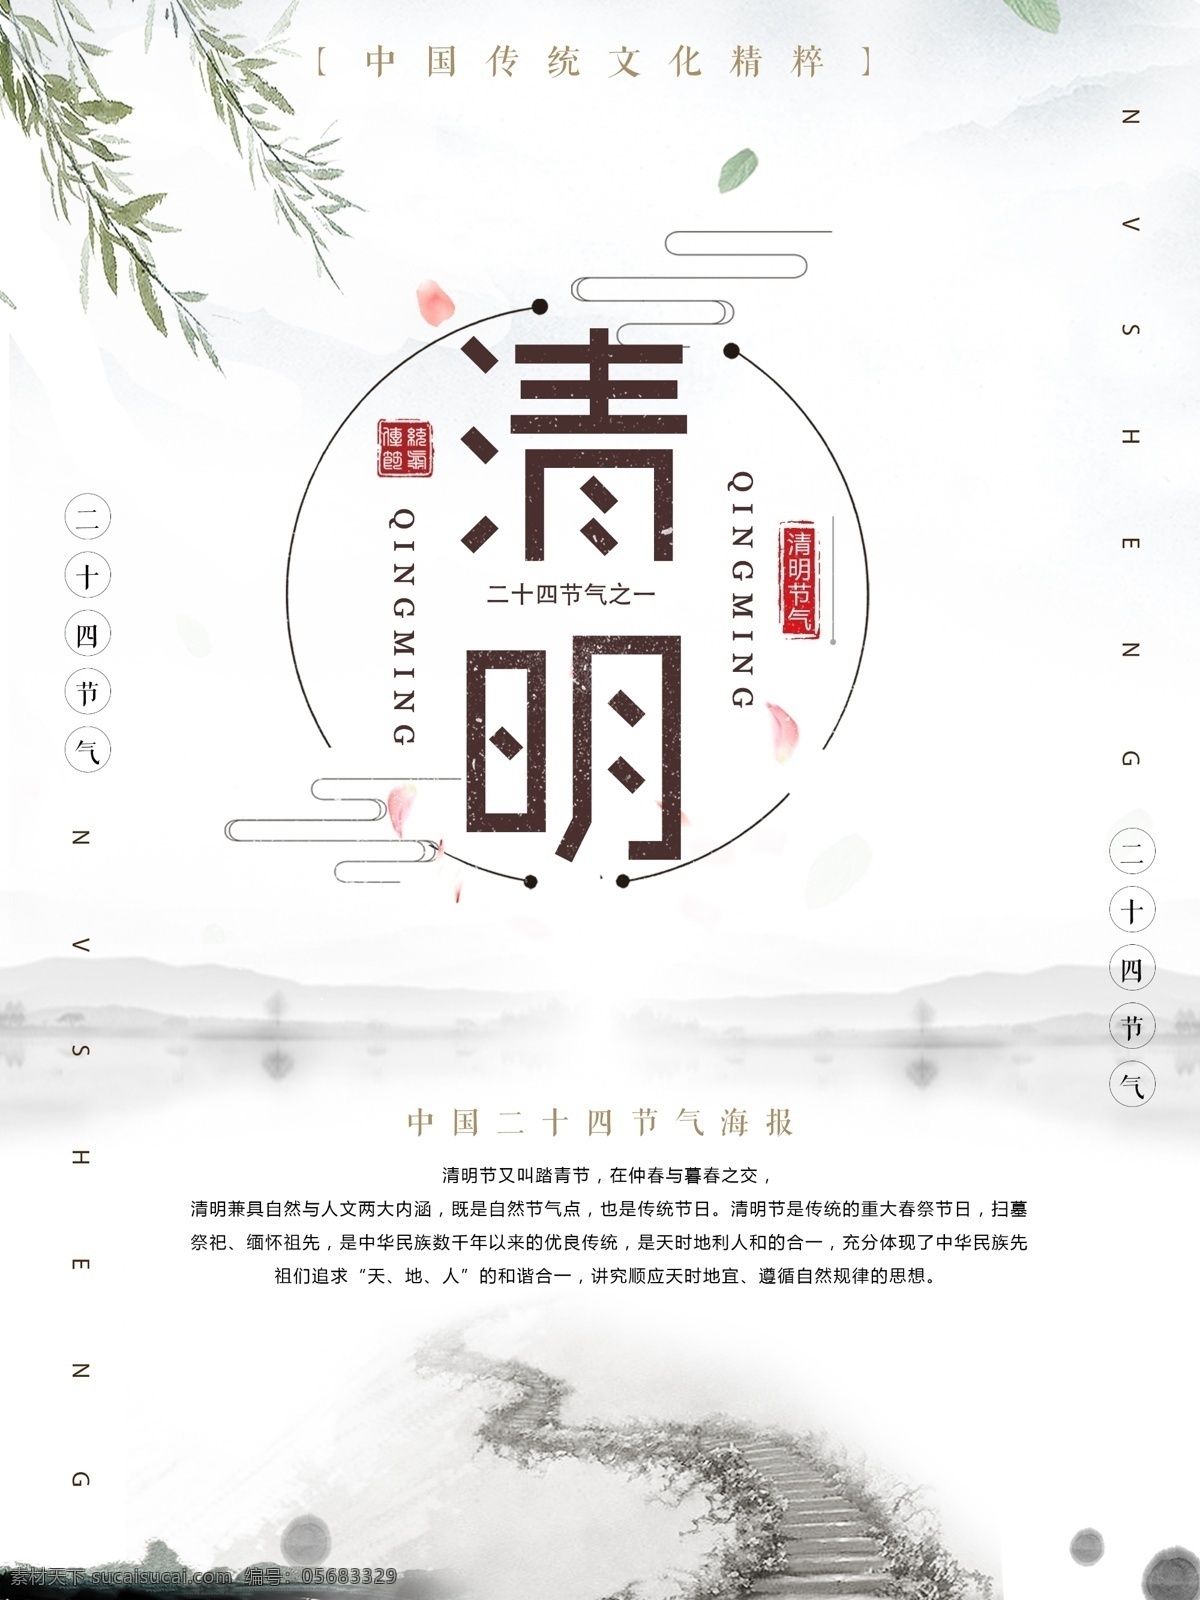 清明节 海报 宣传 中国节日 传统节日 中国风 山水